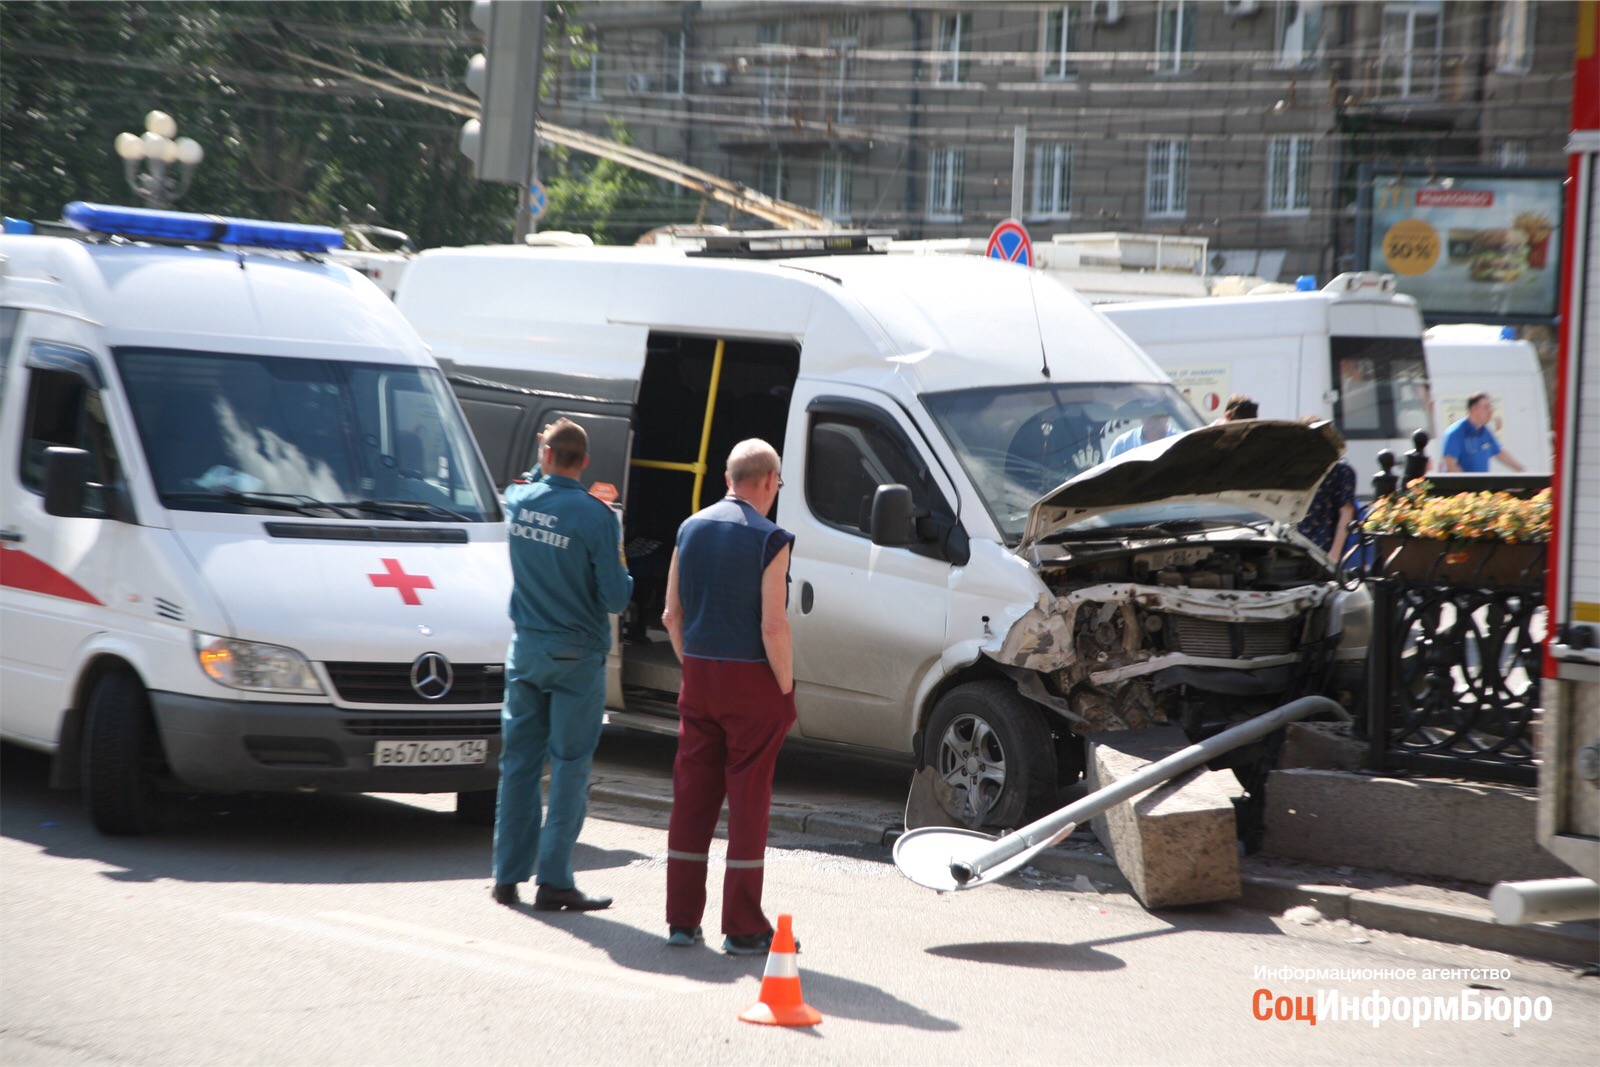 Новости москва сегодня последние свежие видео. ДТП В Волгограде за последние сутки. Матиз авария с автобусом.